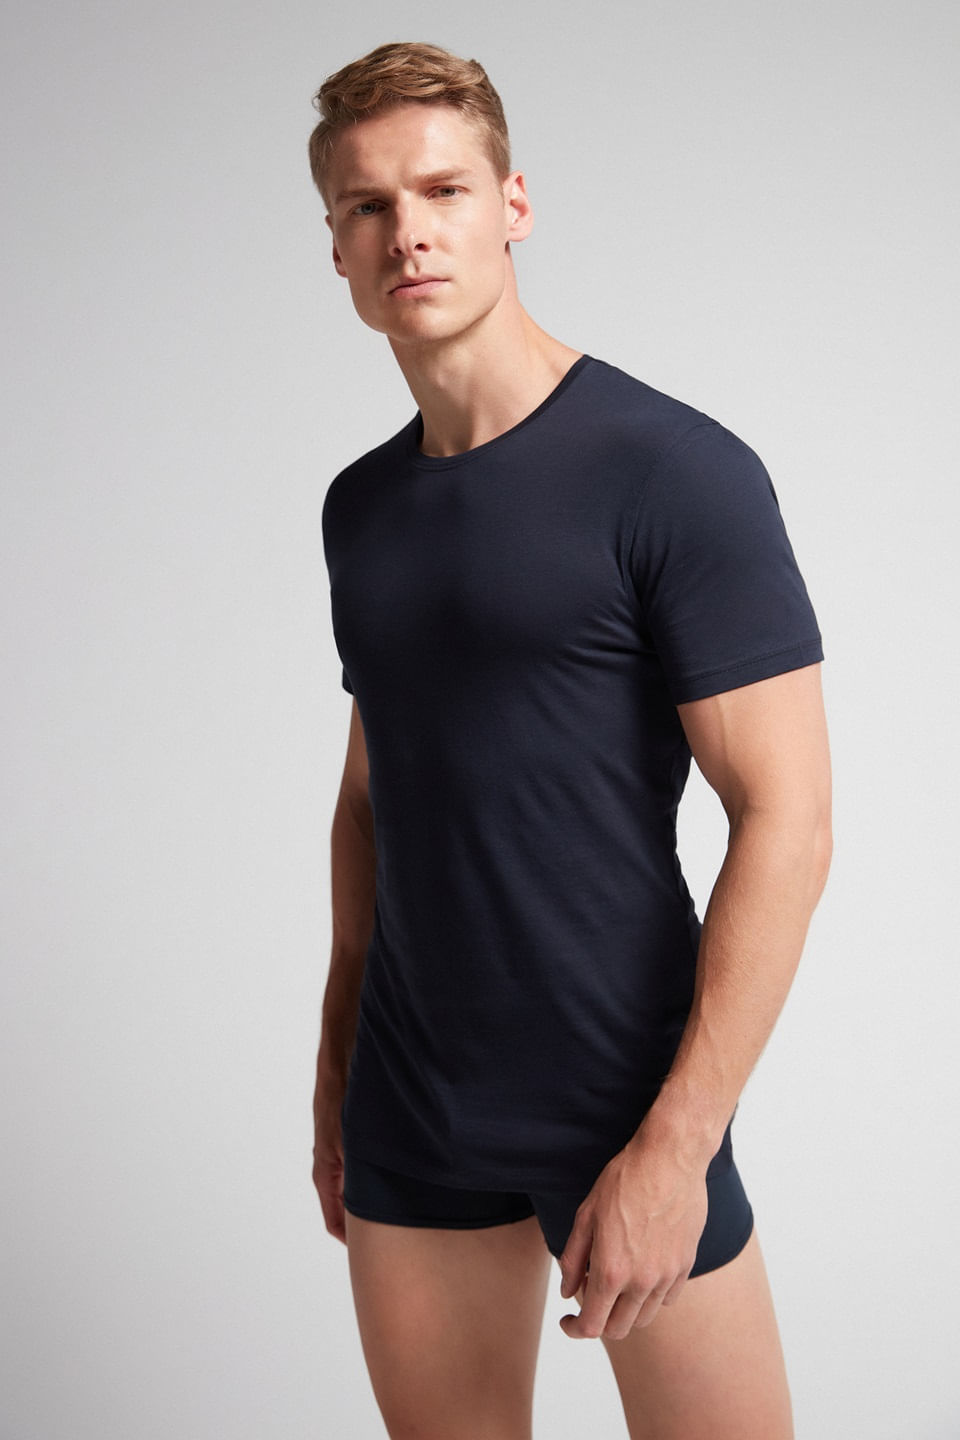 compression shirt Camisa justa, manga curta masculina, sutiã esportivo  básico, camiseta de treino (Color : A1, Size : Medium)